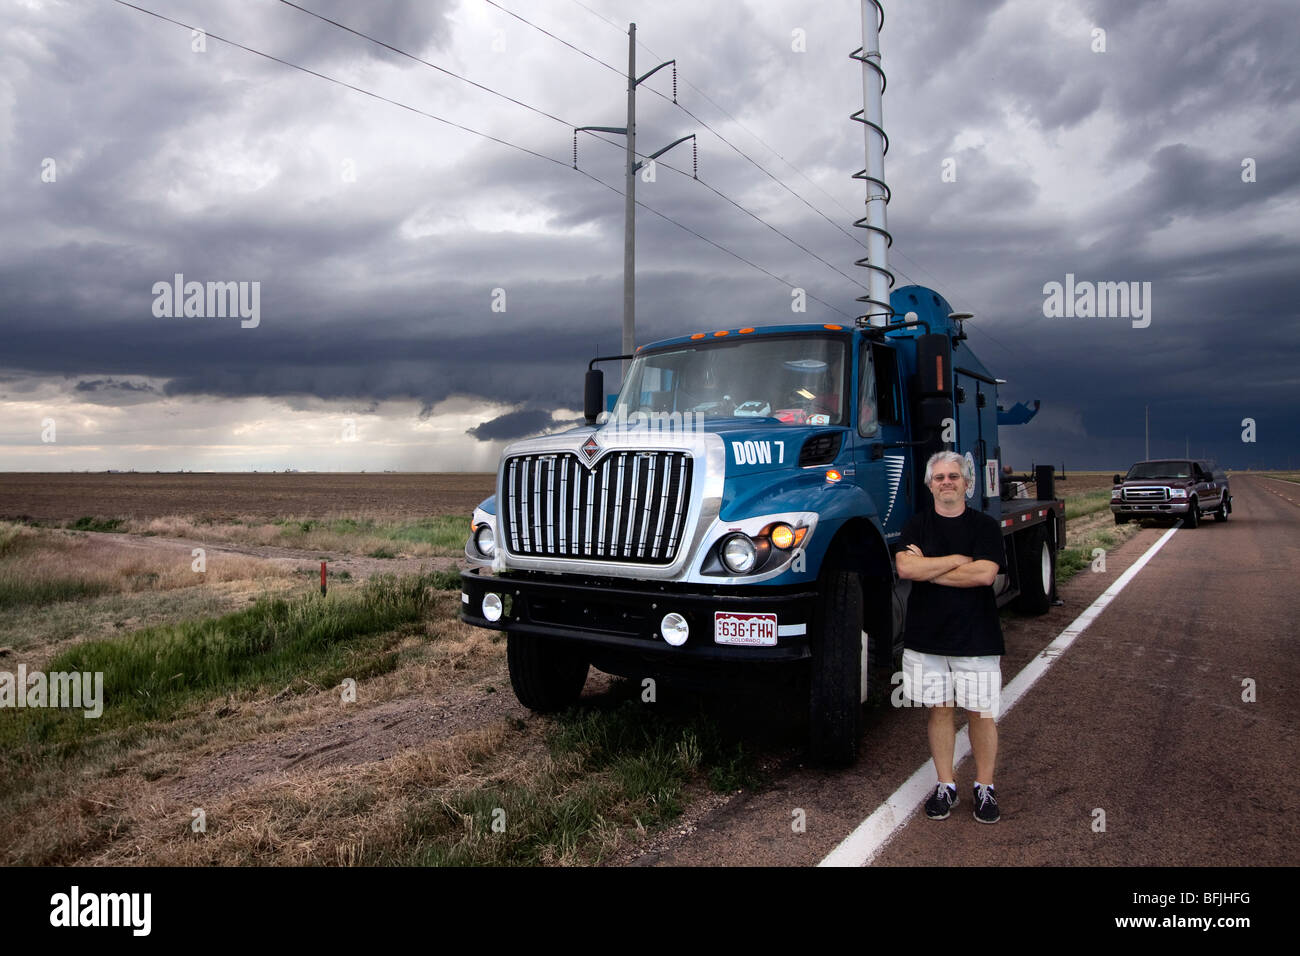 Arzt Josh Wurman des Zentrums für schwere Wetter Forschung steht vor DOW 7, eines seiner Doppler auf Rädern LKW. Stockfoto